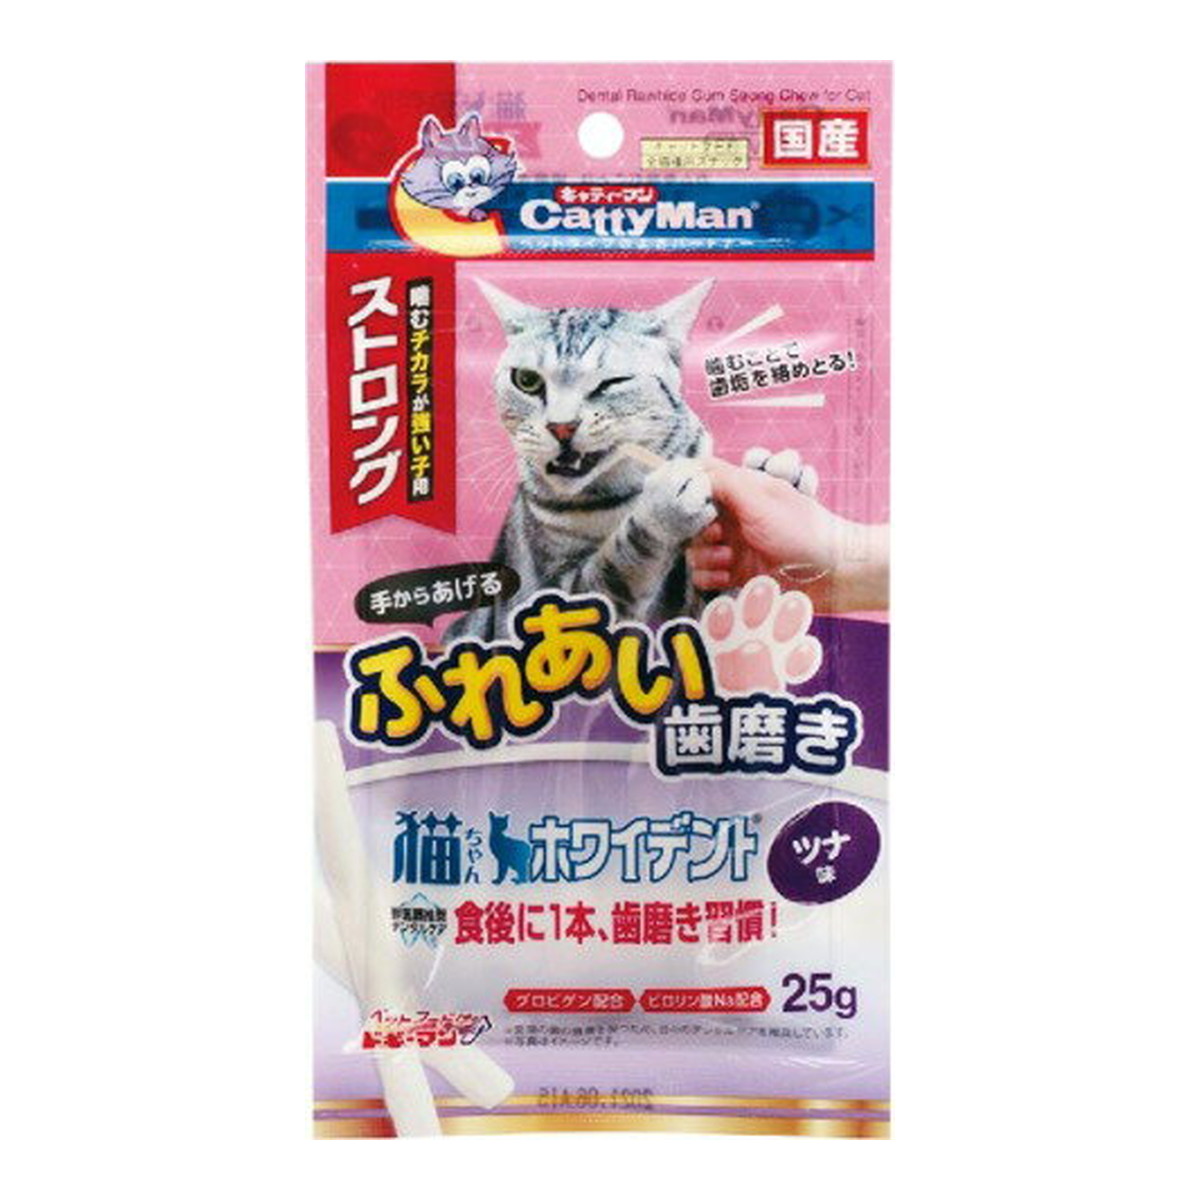 ドギーマン キャティーマン 猫ちゃんホワイデント ストロング ツナ味 25g×48個 キャティーマン 猫用おやつの商品画像